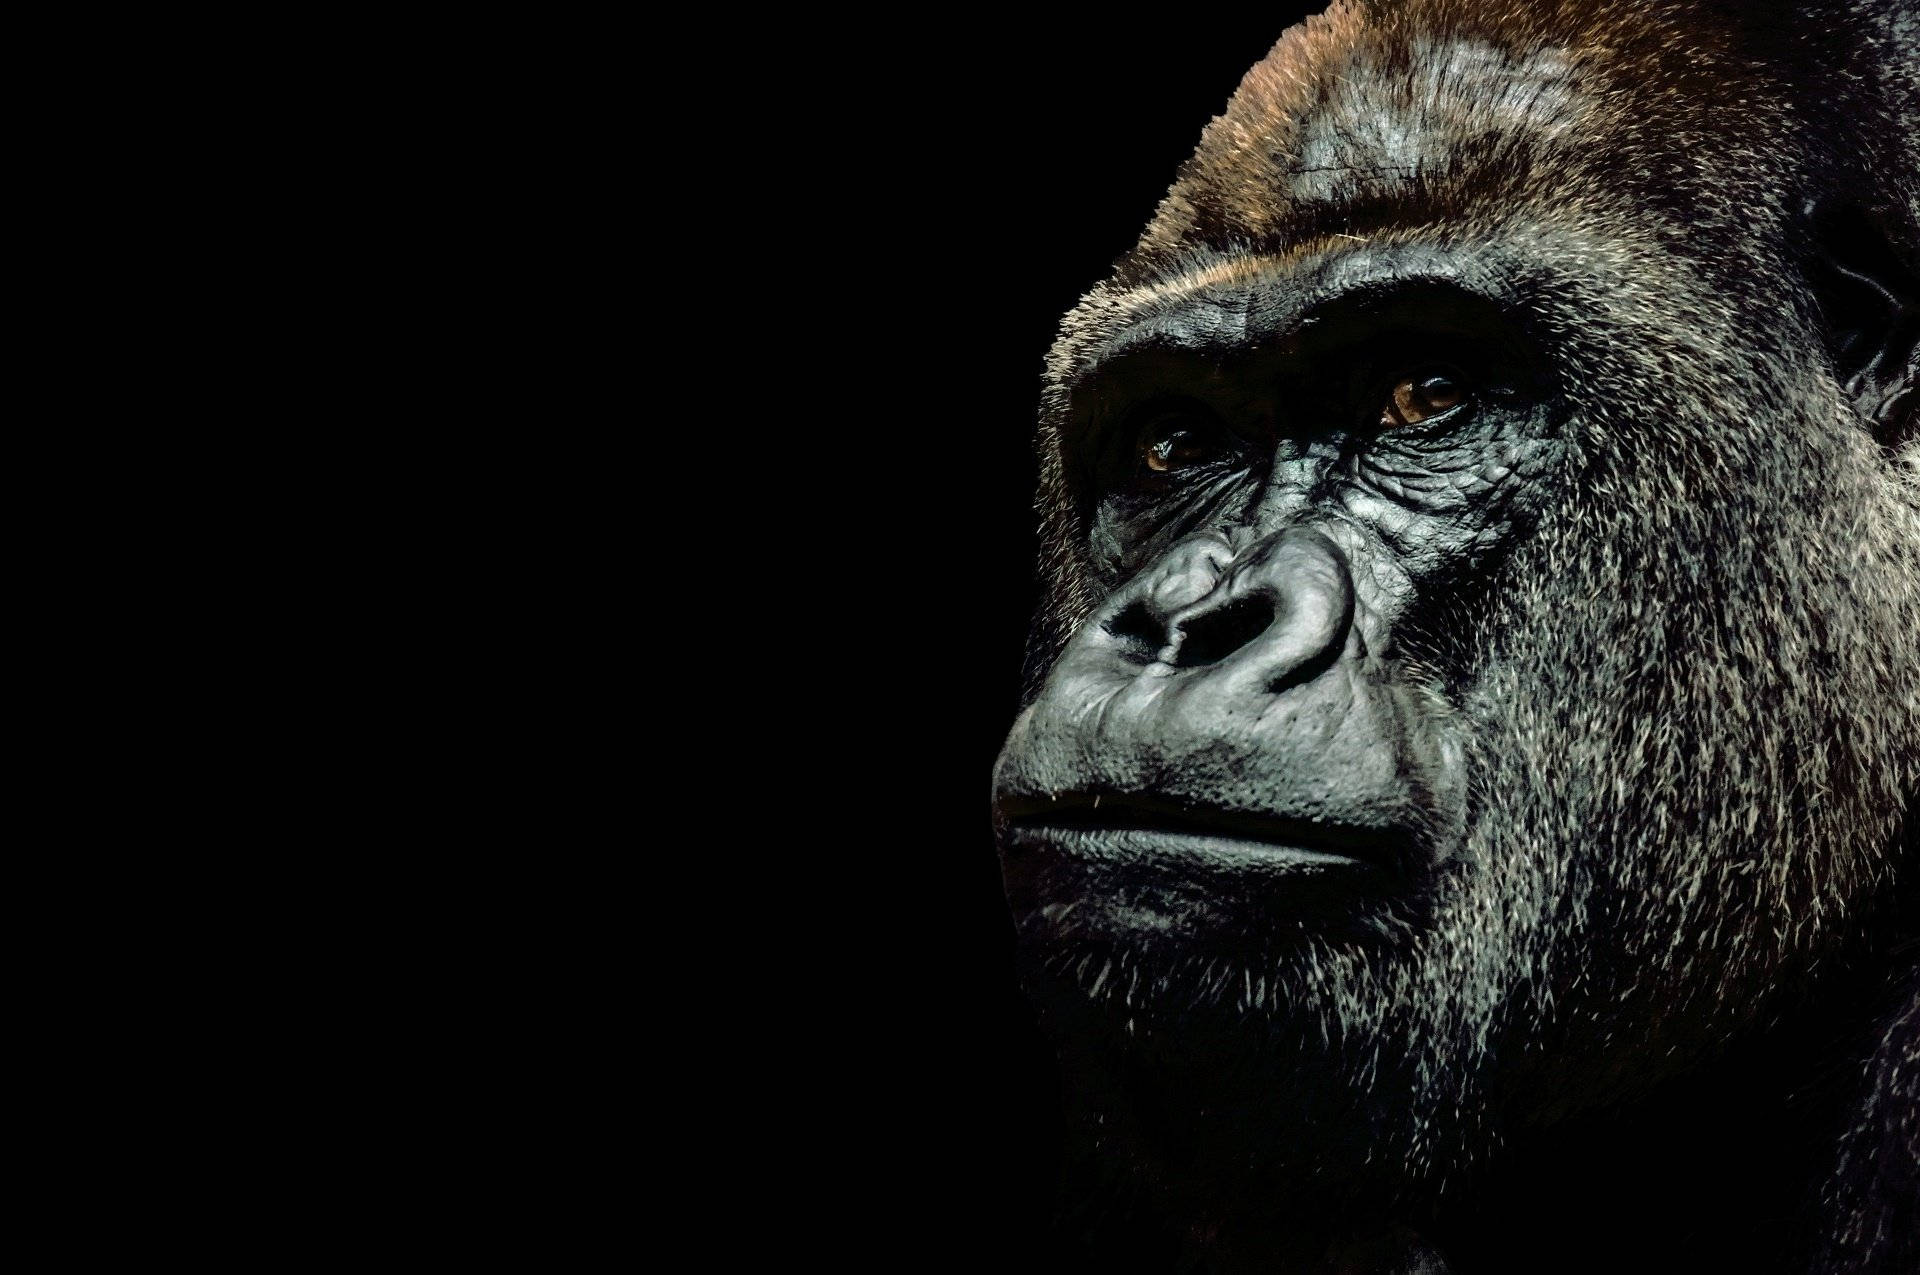 Enskrivbordsbakgrund Med En Gorilla Som Sitter I Naturen. Wallpaper